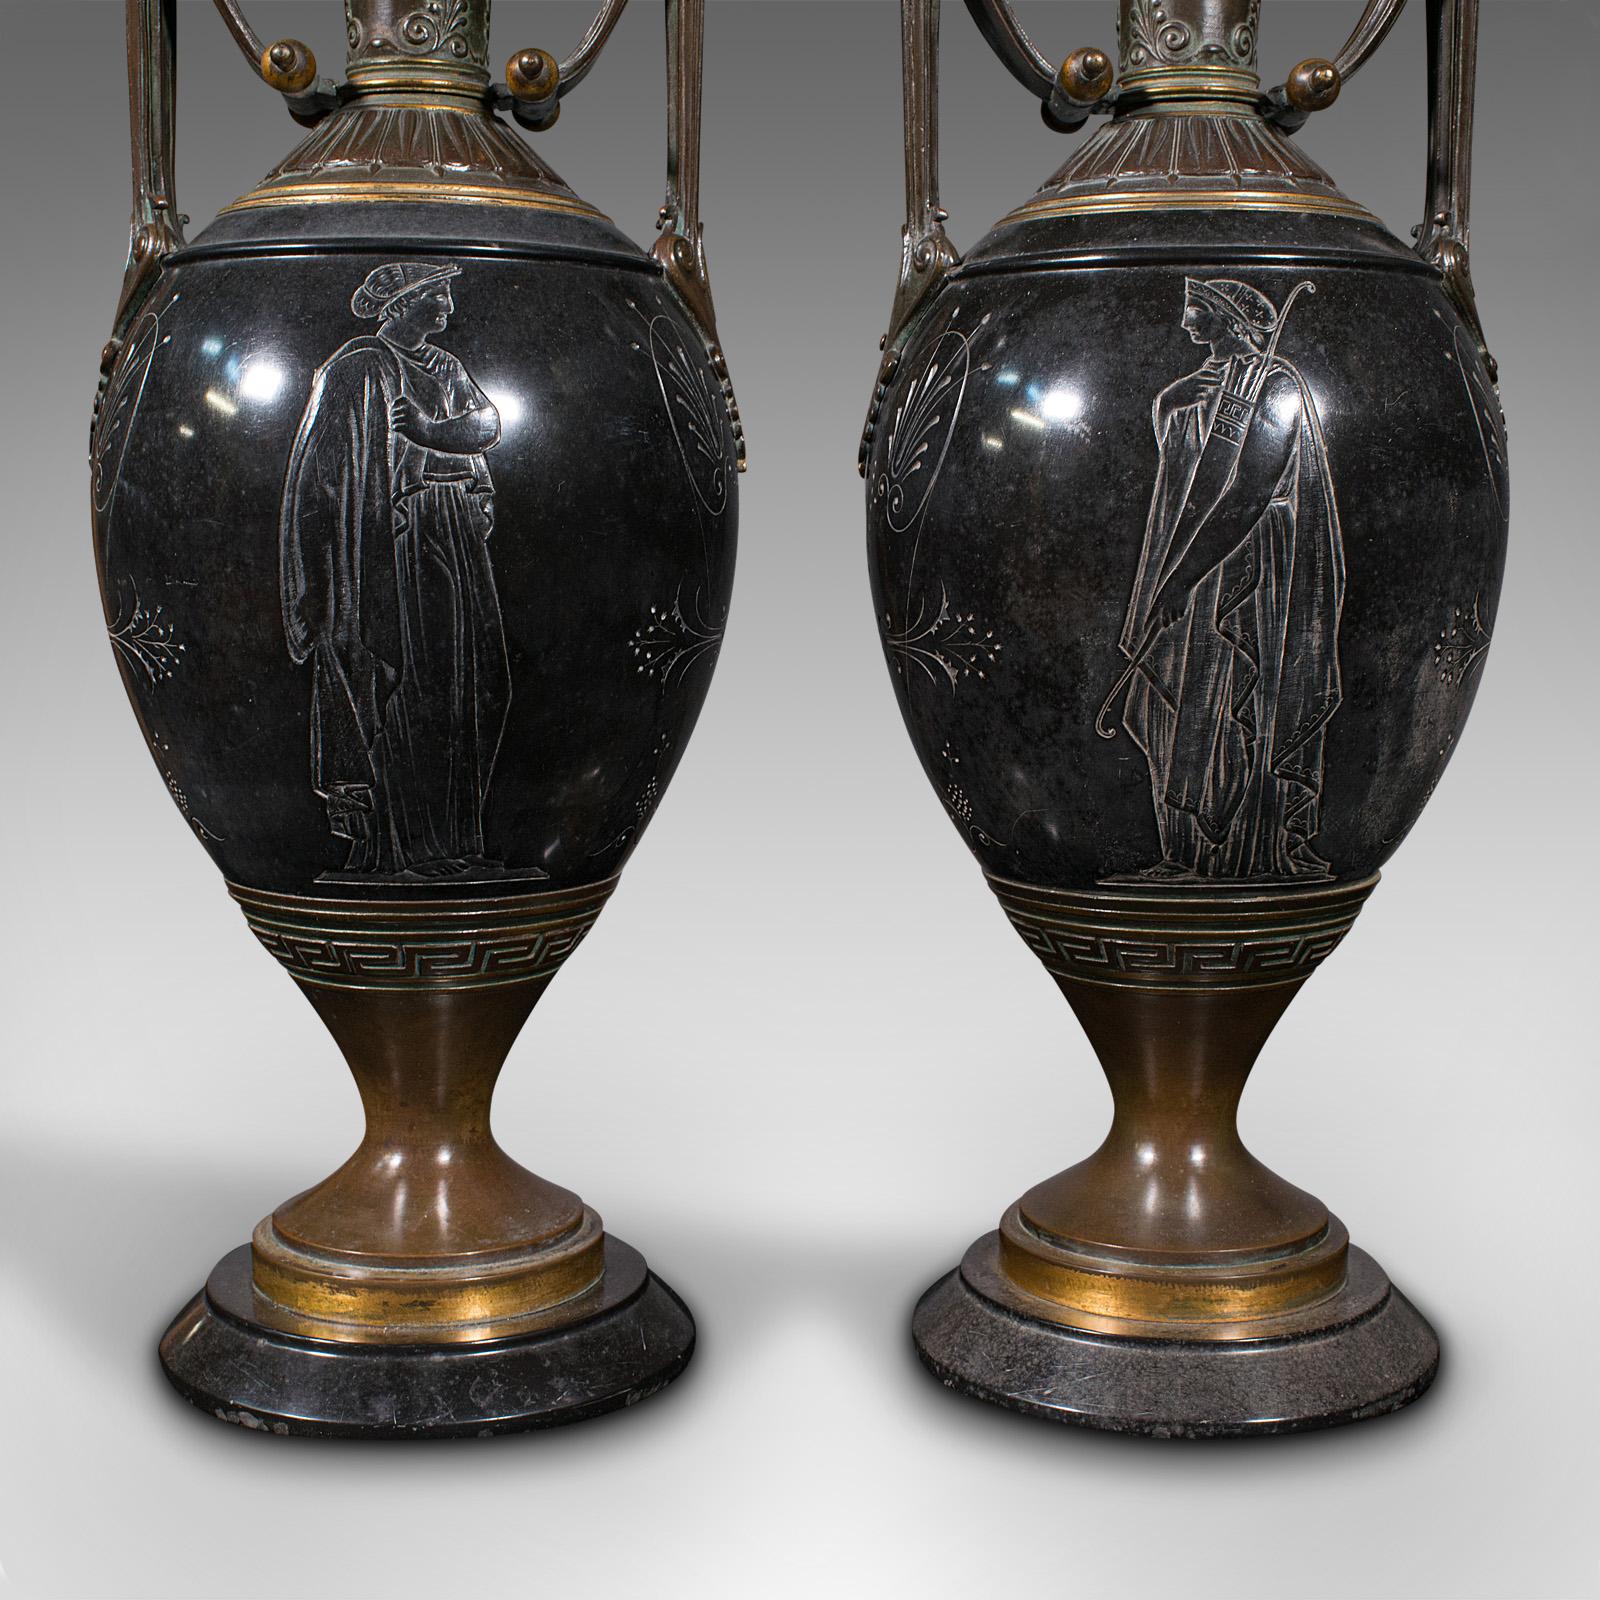 Pair of Antique Display Vases, Italian, Marble, Decorative Urn, Grand Tour, 1870 5